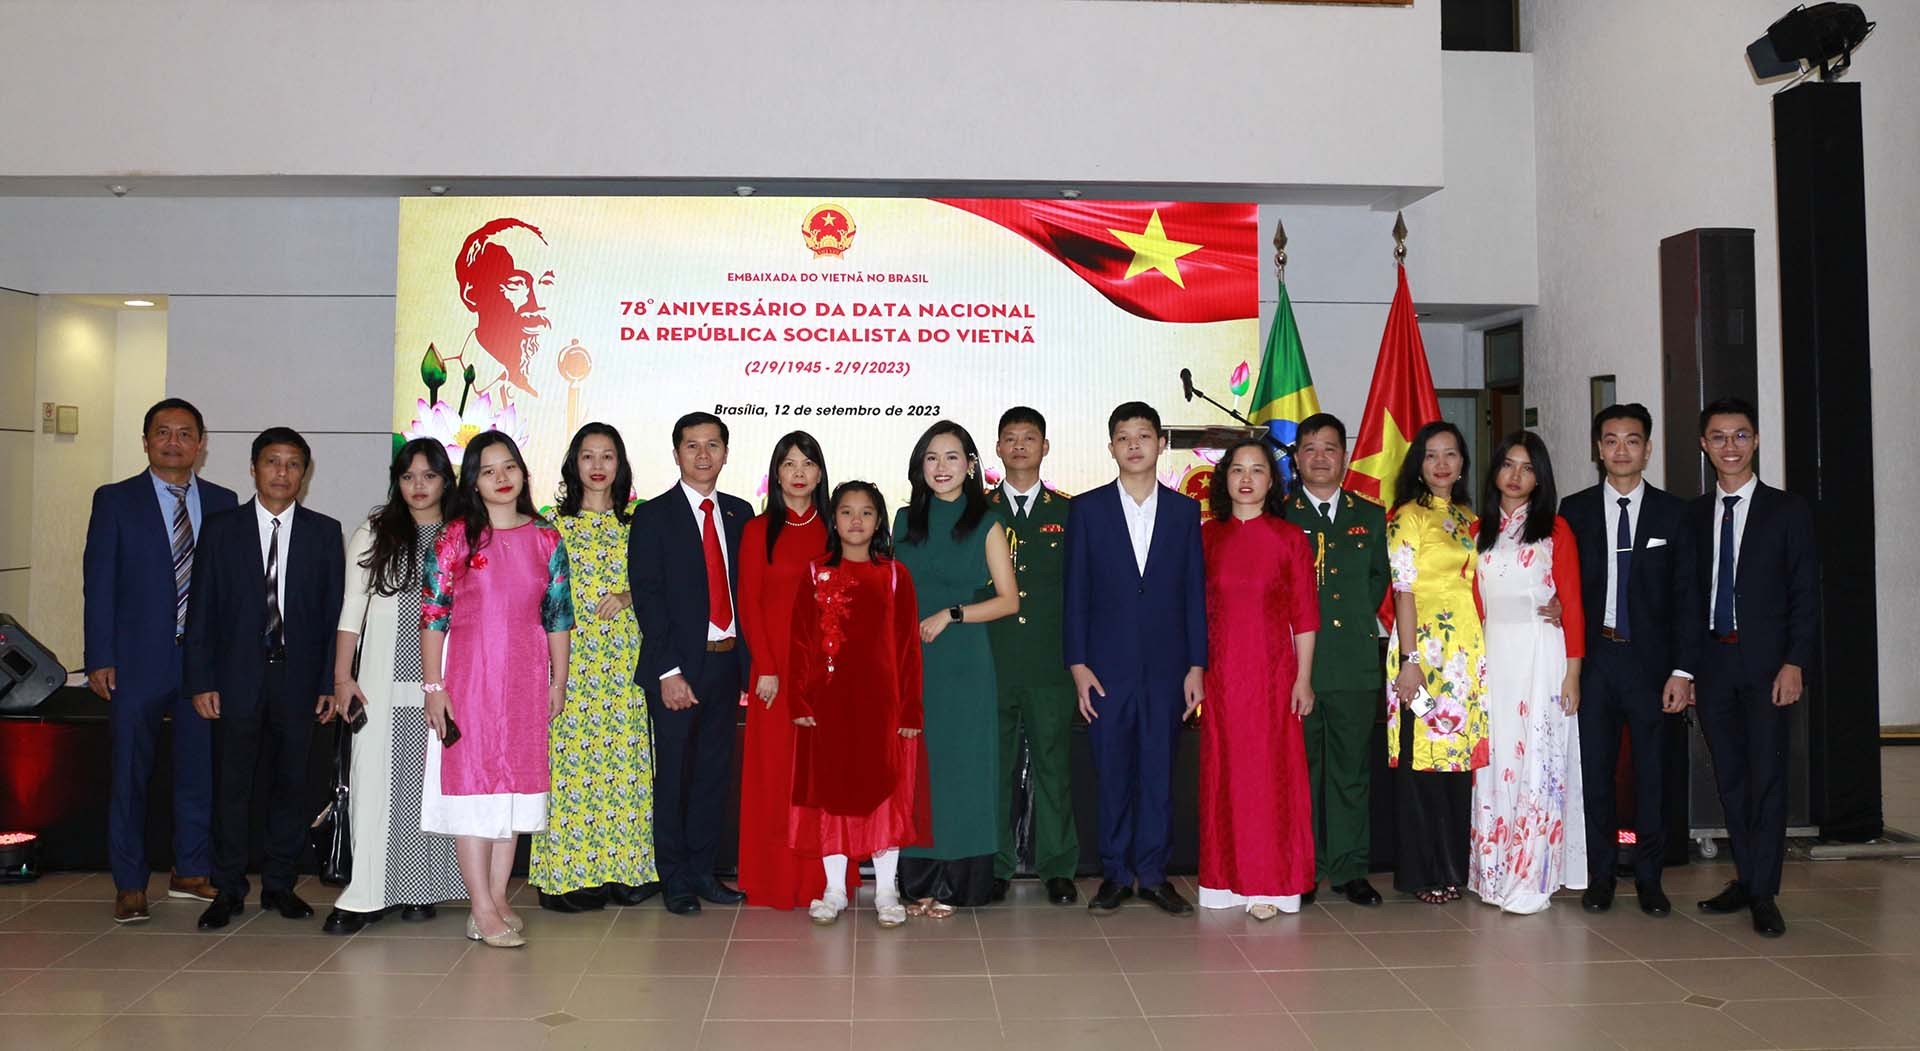 Đại sứ quán Việt Nam tại Brazil tổ chức kỷ niệm 78 năm Quốc khánh 2/9